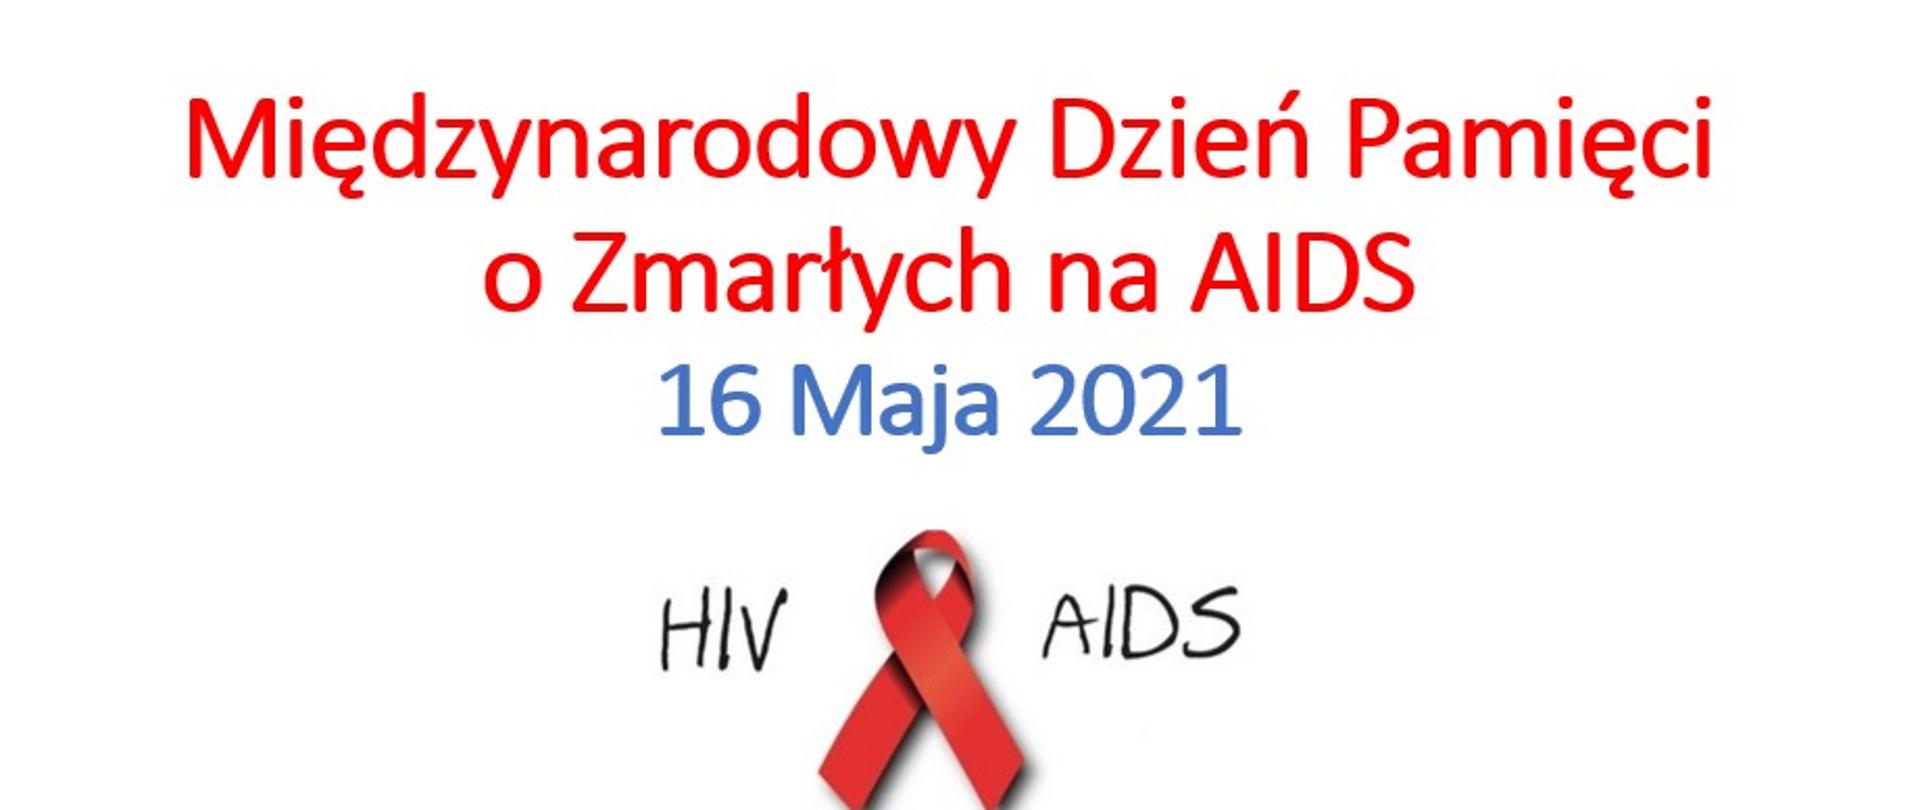 Napis: Międzynarodowy Dzień Pamięci o Zmarłych na AIDS 16 maja 2021, czerwona kokarda